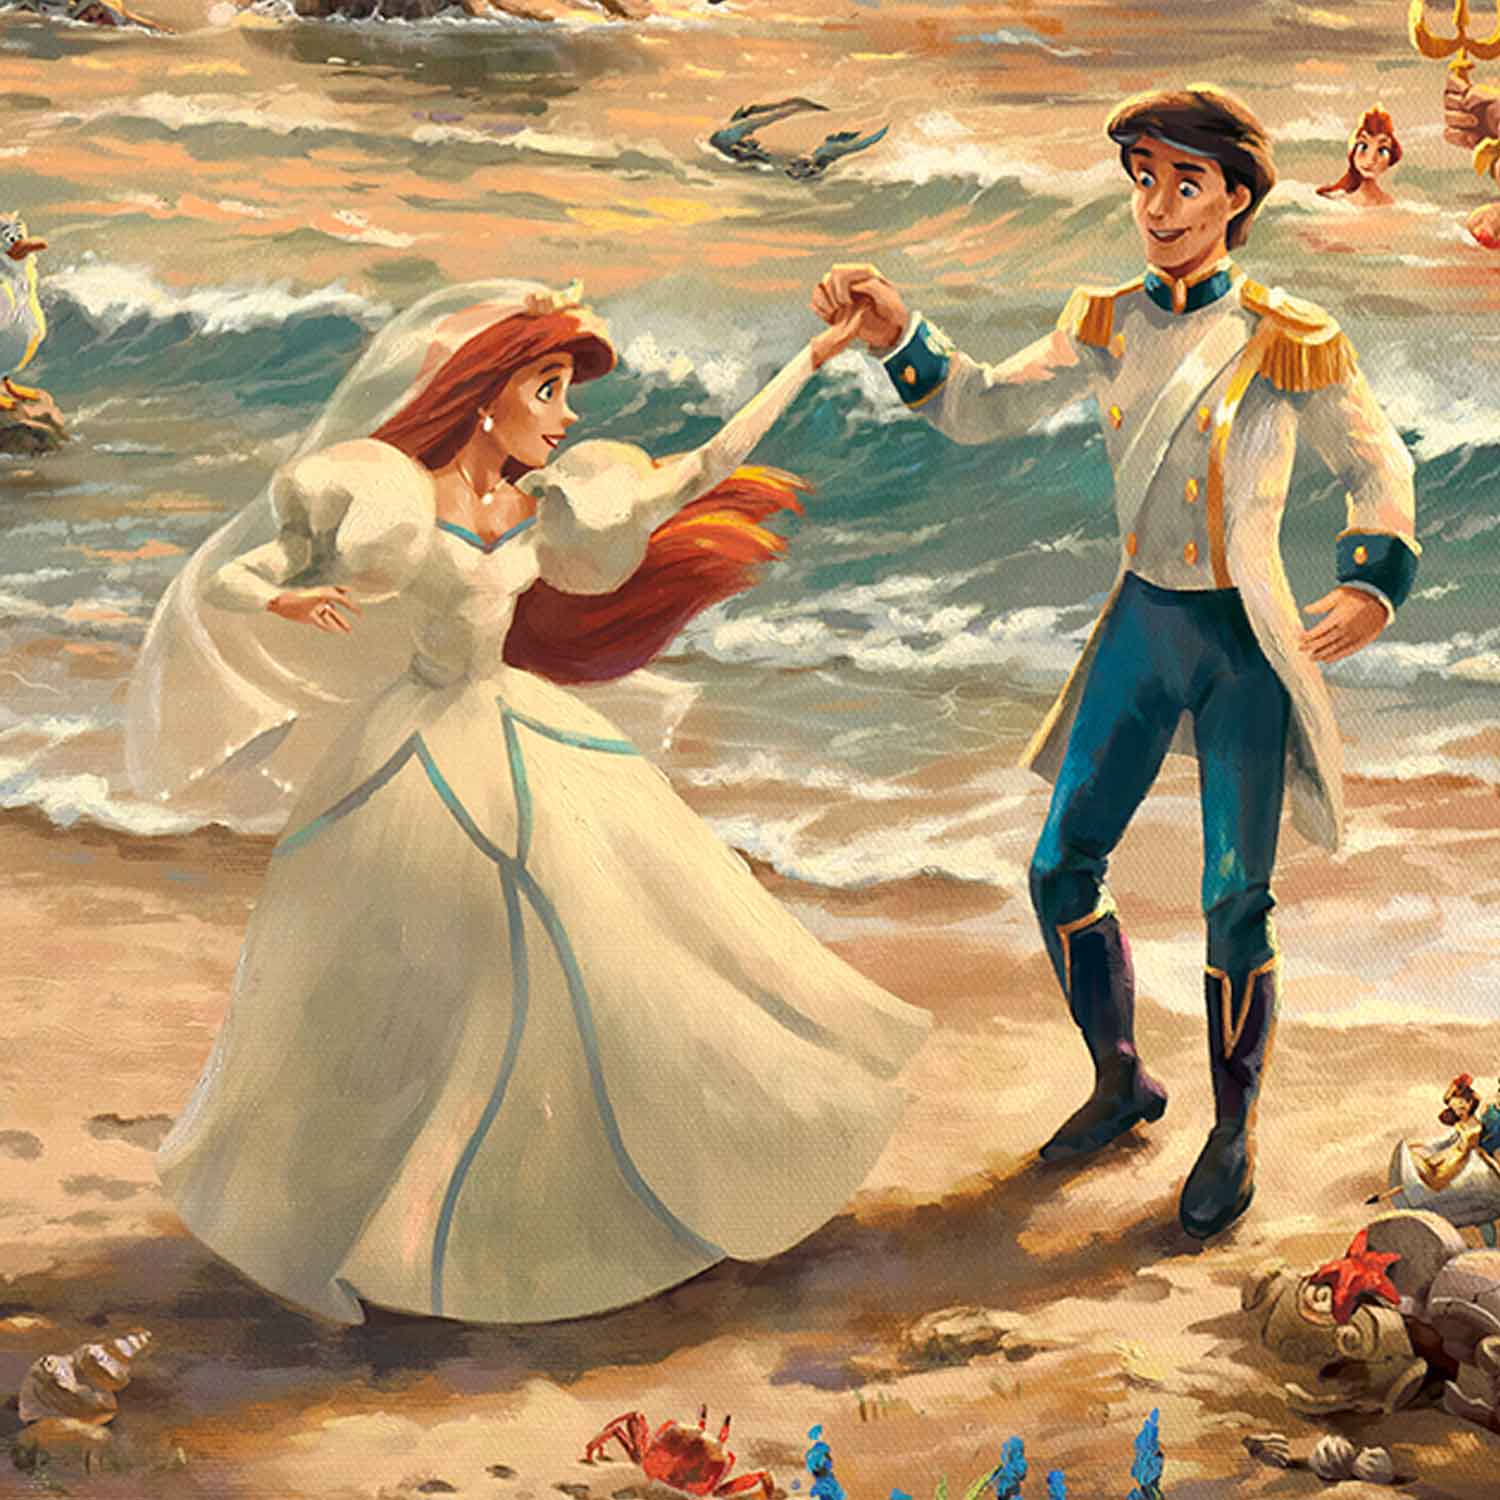 Ariel and the Prince Eric dancing - Closeup